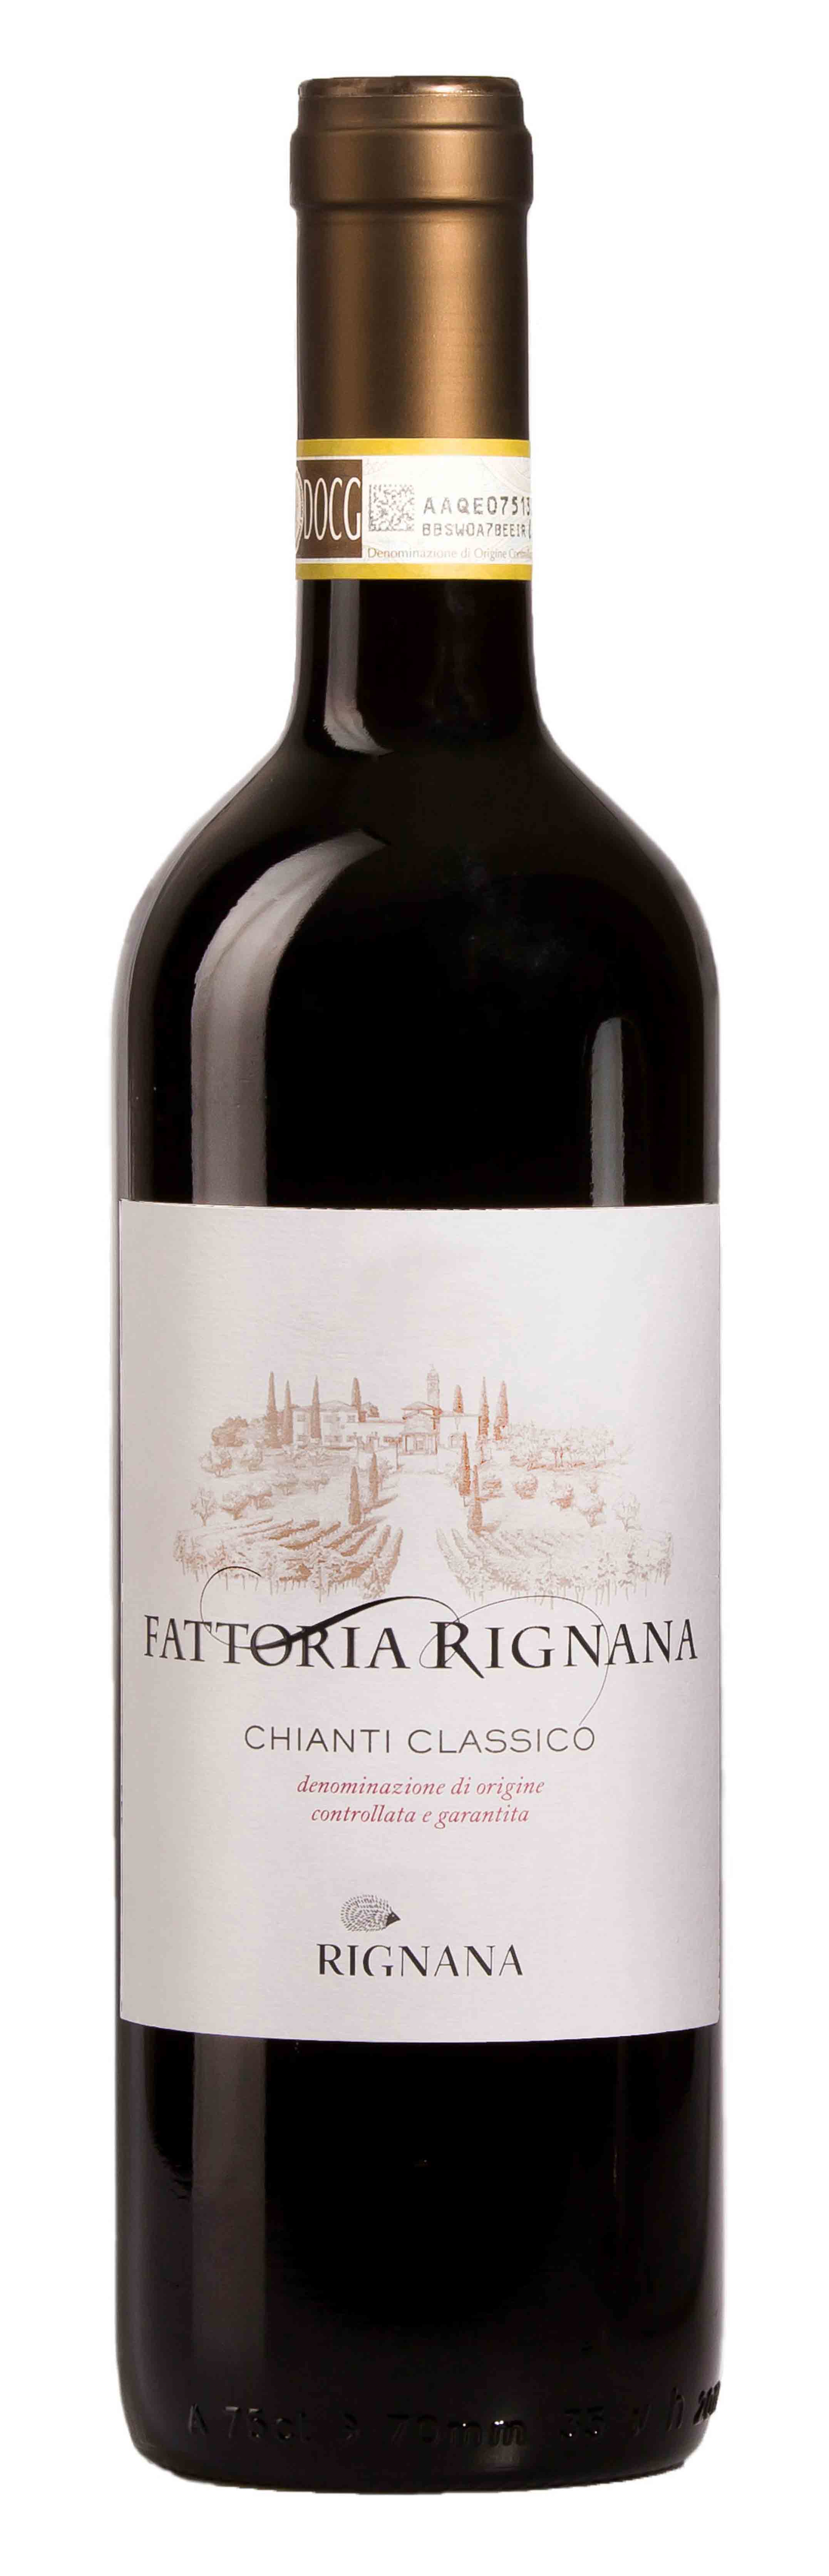 leerplan vacht buste Fattoria di Rignana Chianti Classico - Wine from Chianti